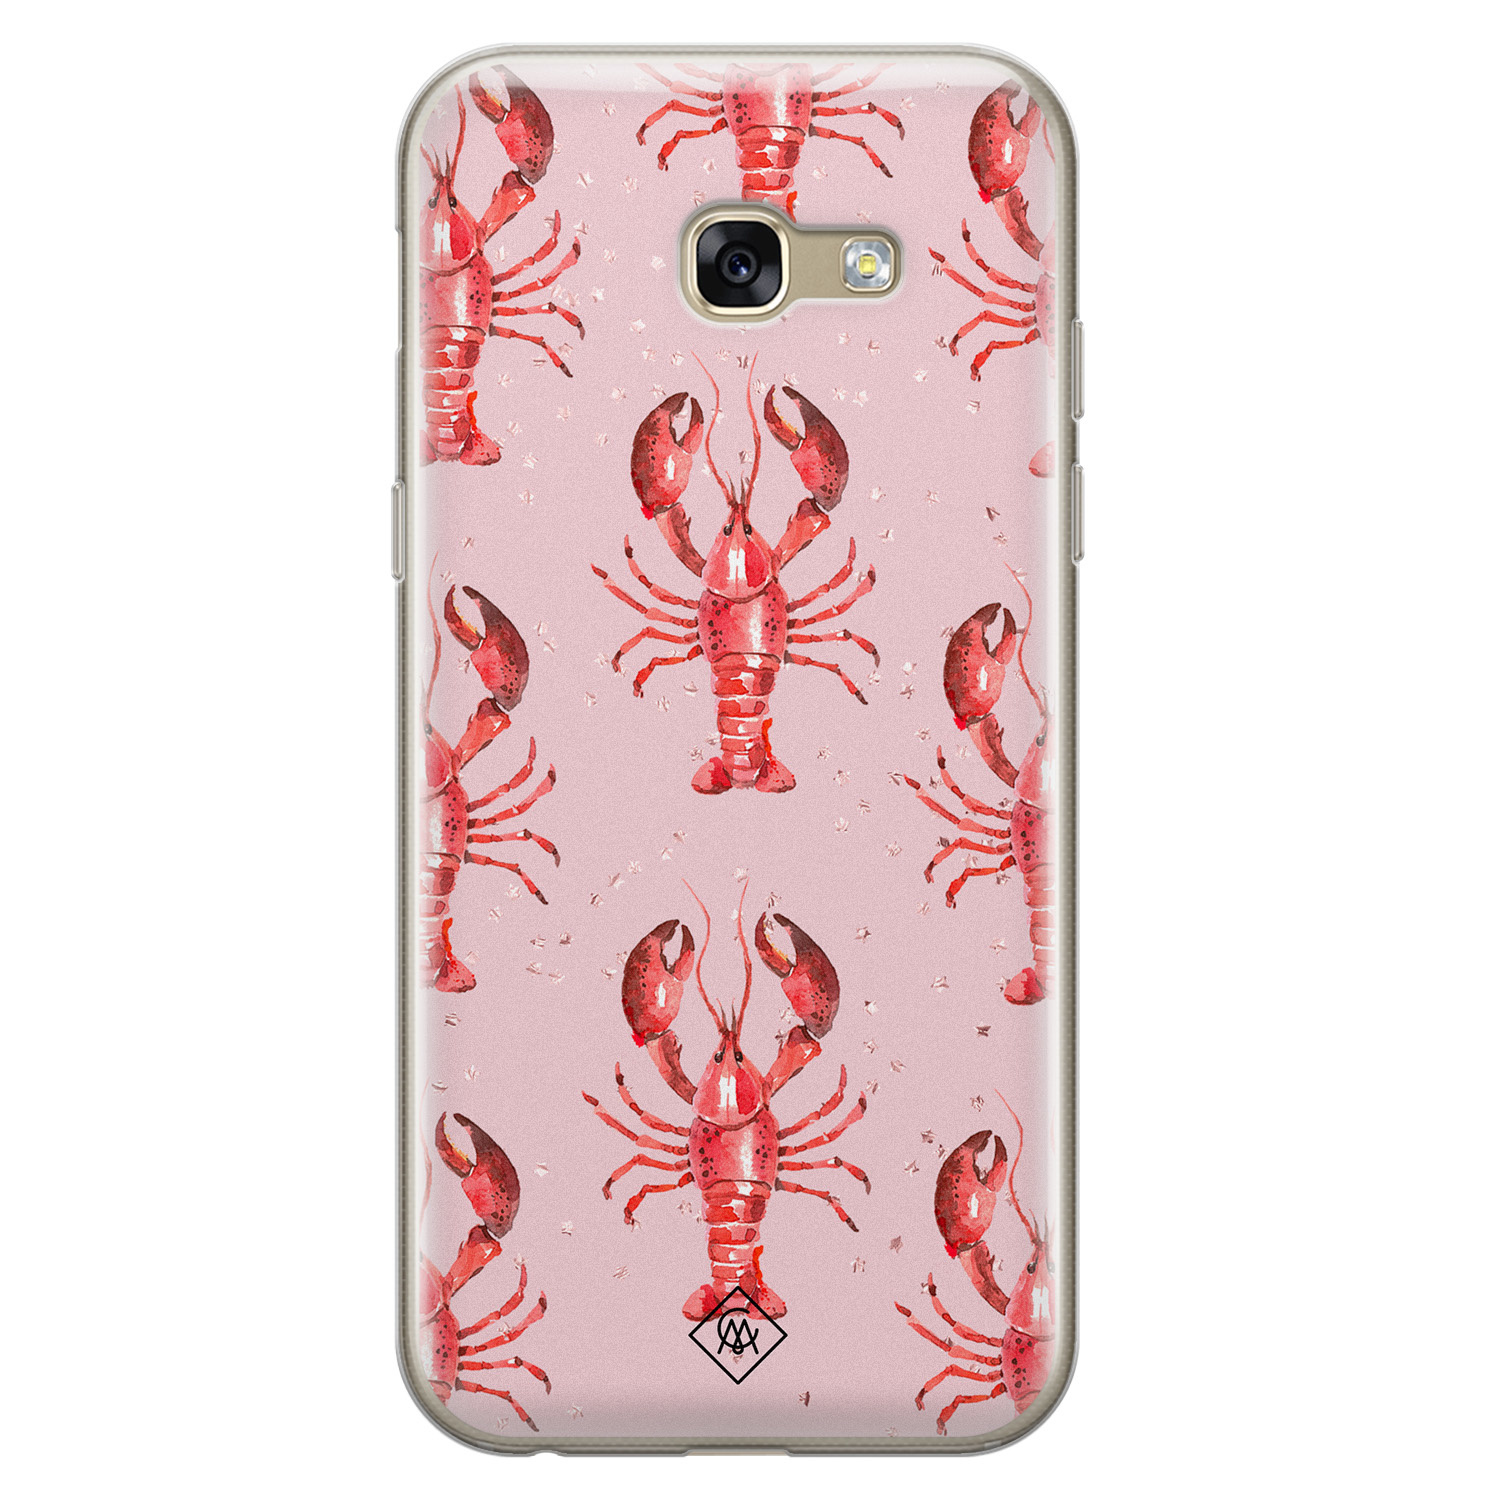 lava bedriegen Philadelphia Samsung Galaxy A5 2017 siliconen telefoonhoesje - Lobster all the way -  Casimoda.nl